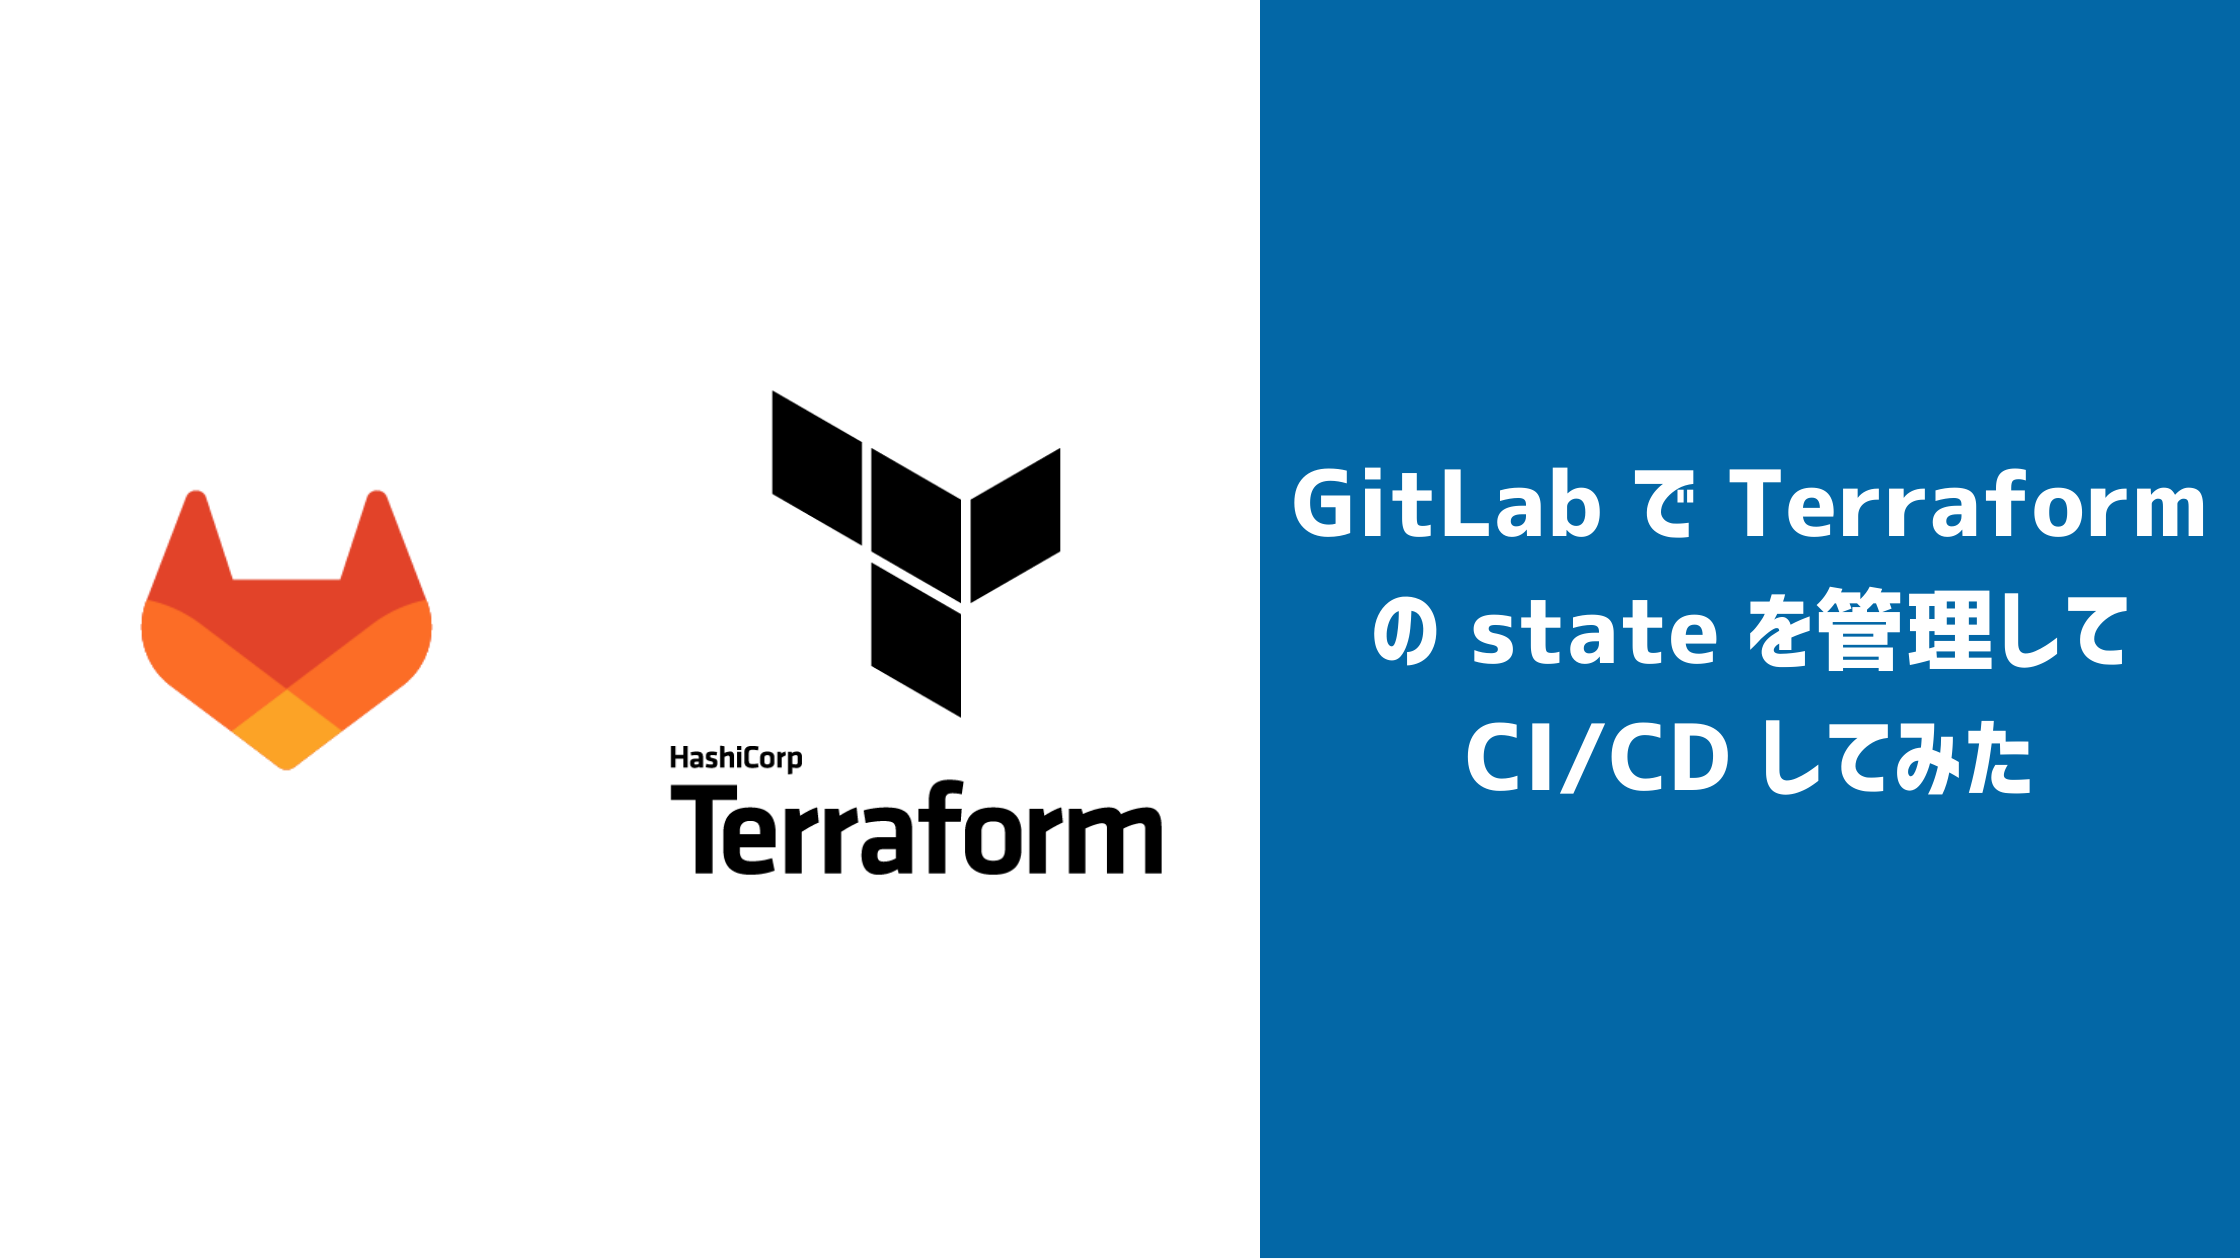 GitLab で Terraform の state を管理して CI/CD をしてみた